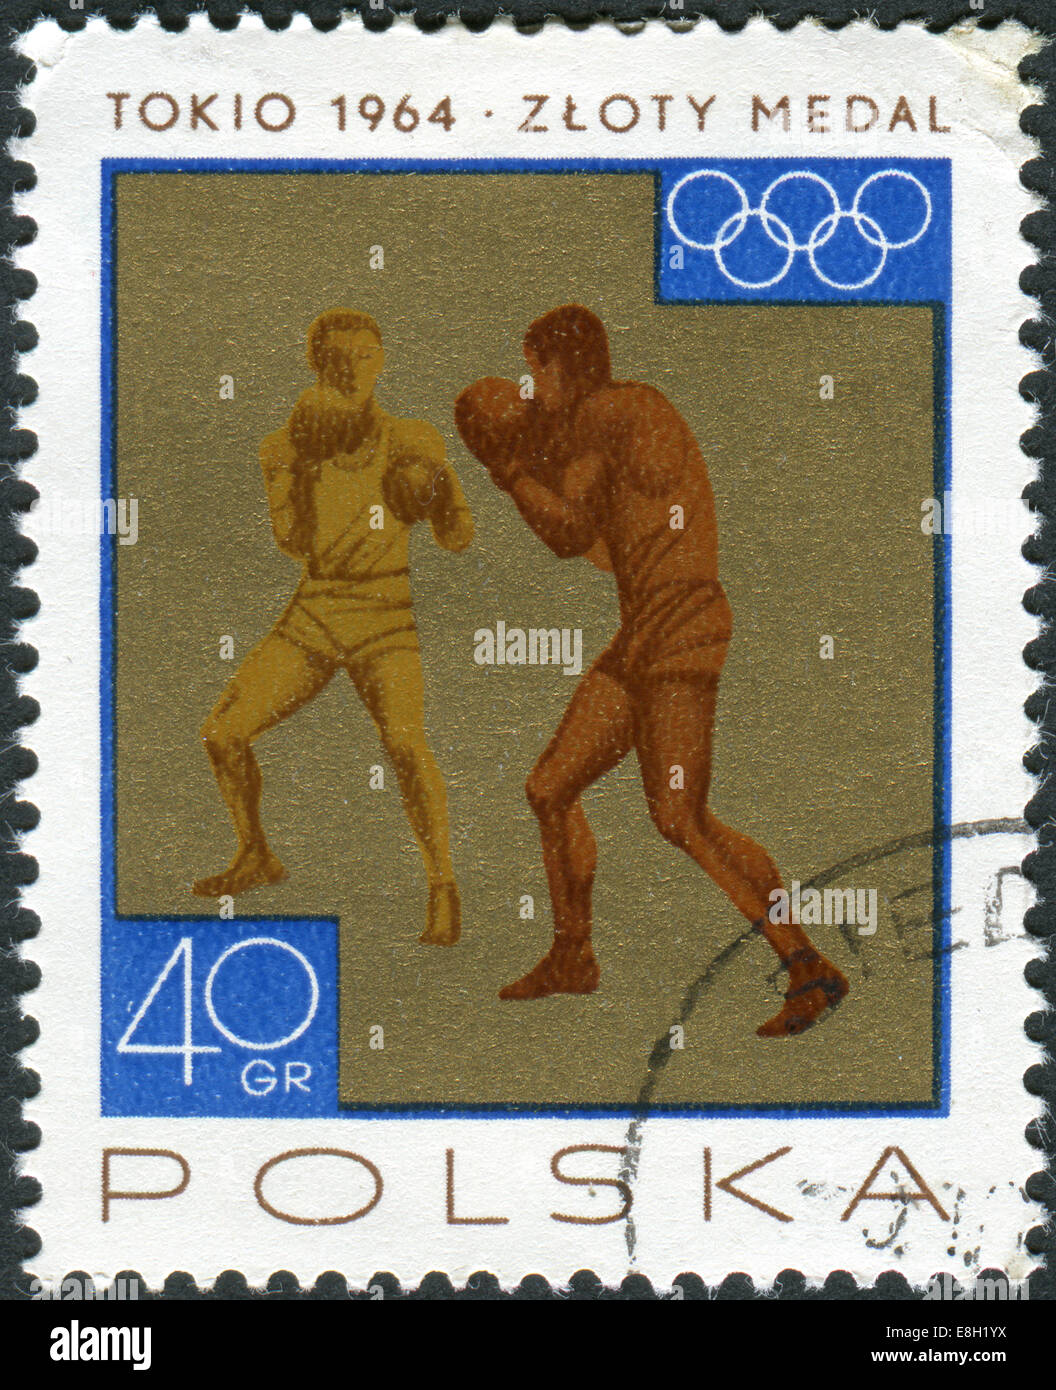 Briefmarke gedruckt in Polen zeigt die Siege gewann die polnische Mannschaft bei den Olympischen Spielen 1964, Boxen Stockfoto